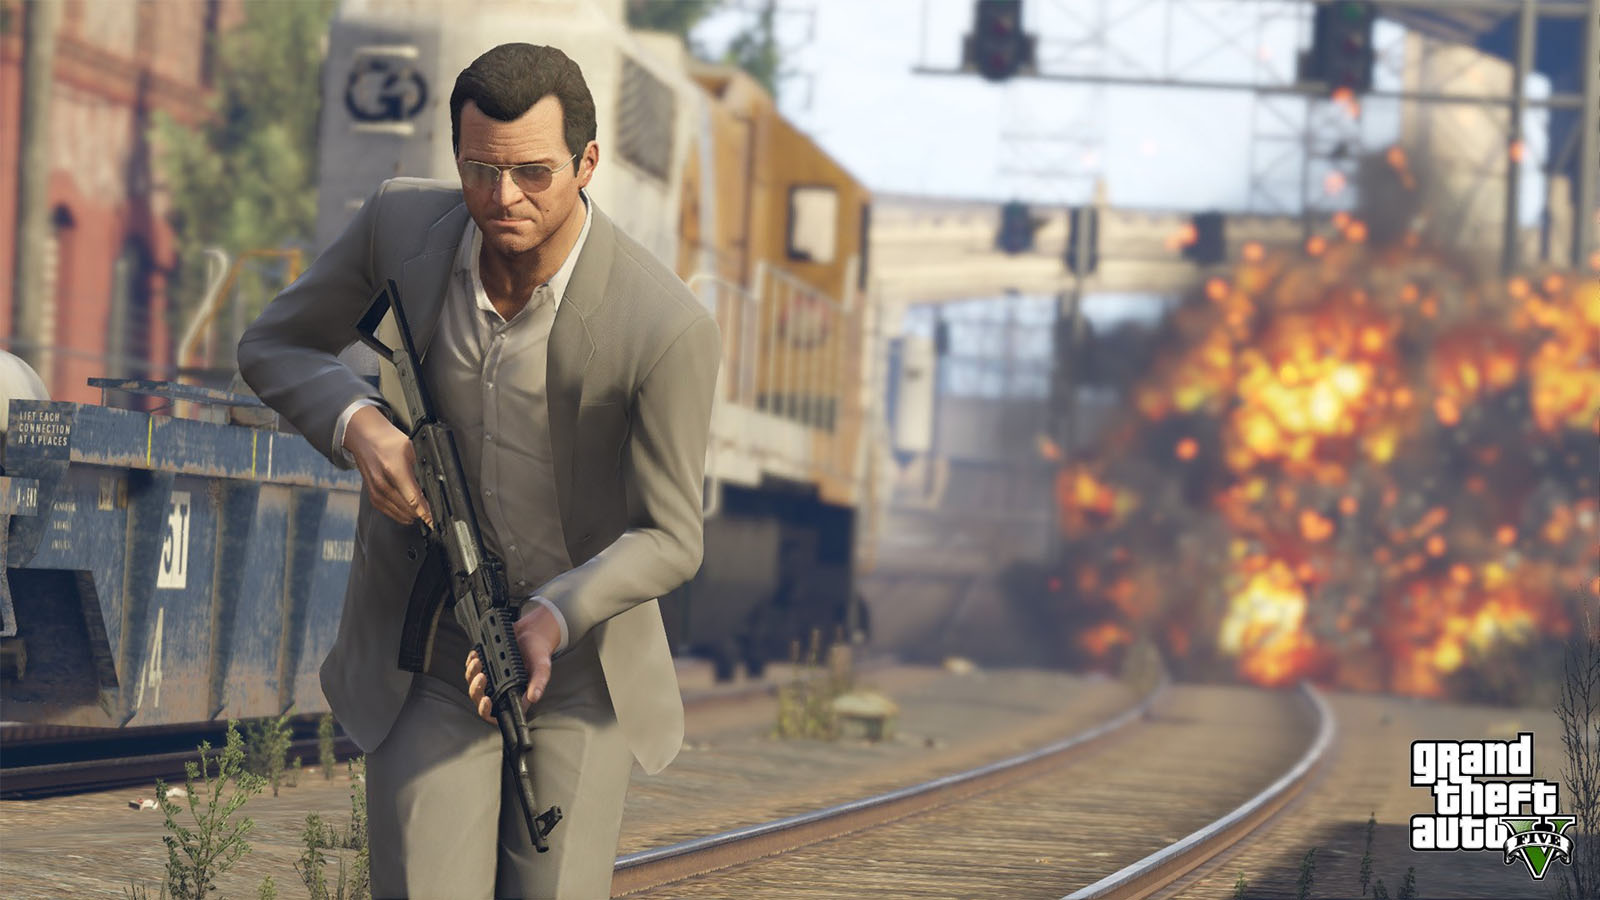 爆発騒動でリコール中のGalaxy Note 7、『Grand Theft Auto V』で爆弾になる